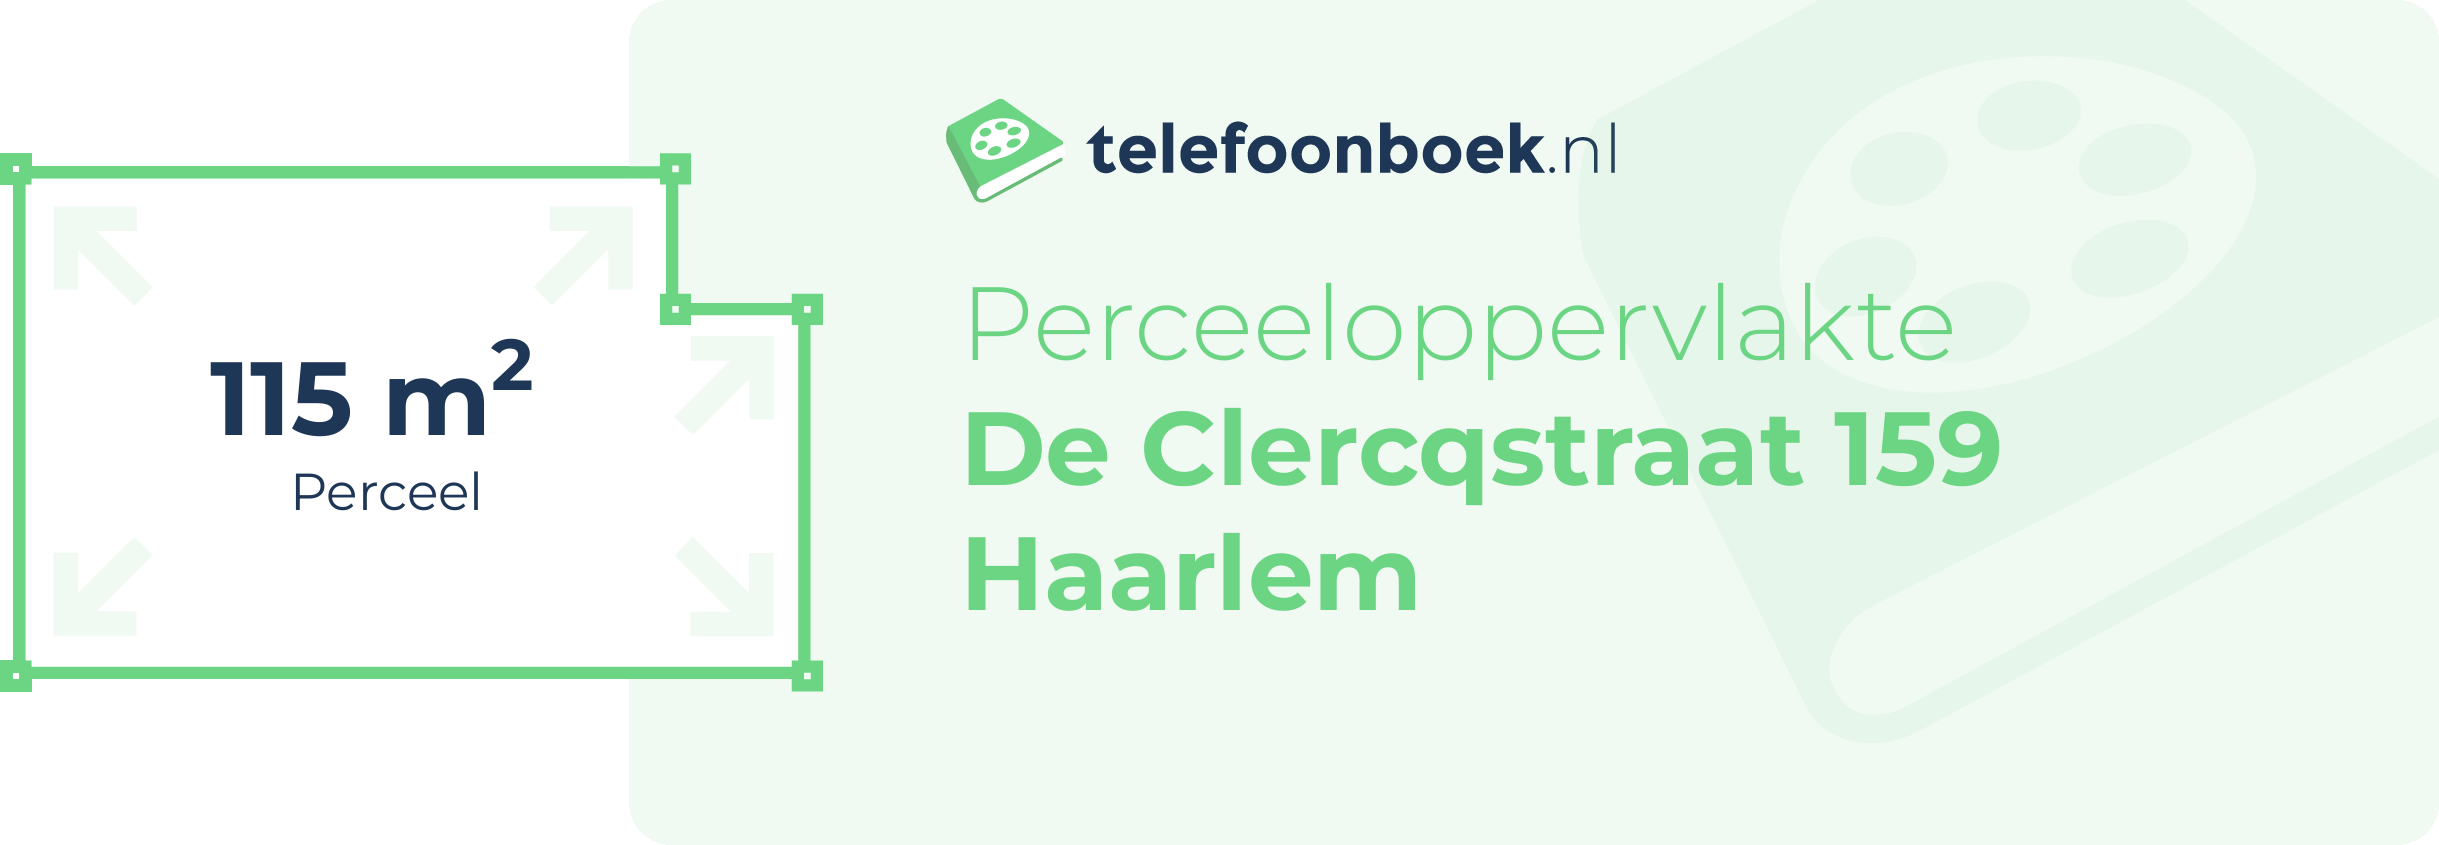 Perceeloppervlakte De Clercqstraat 159 Haarlem